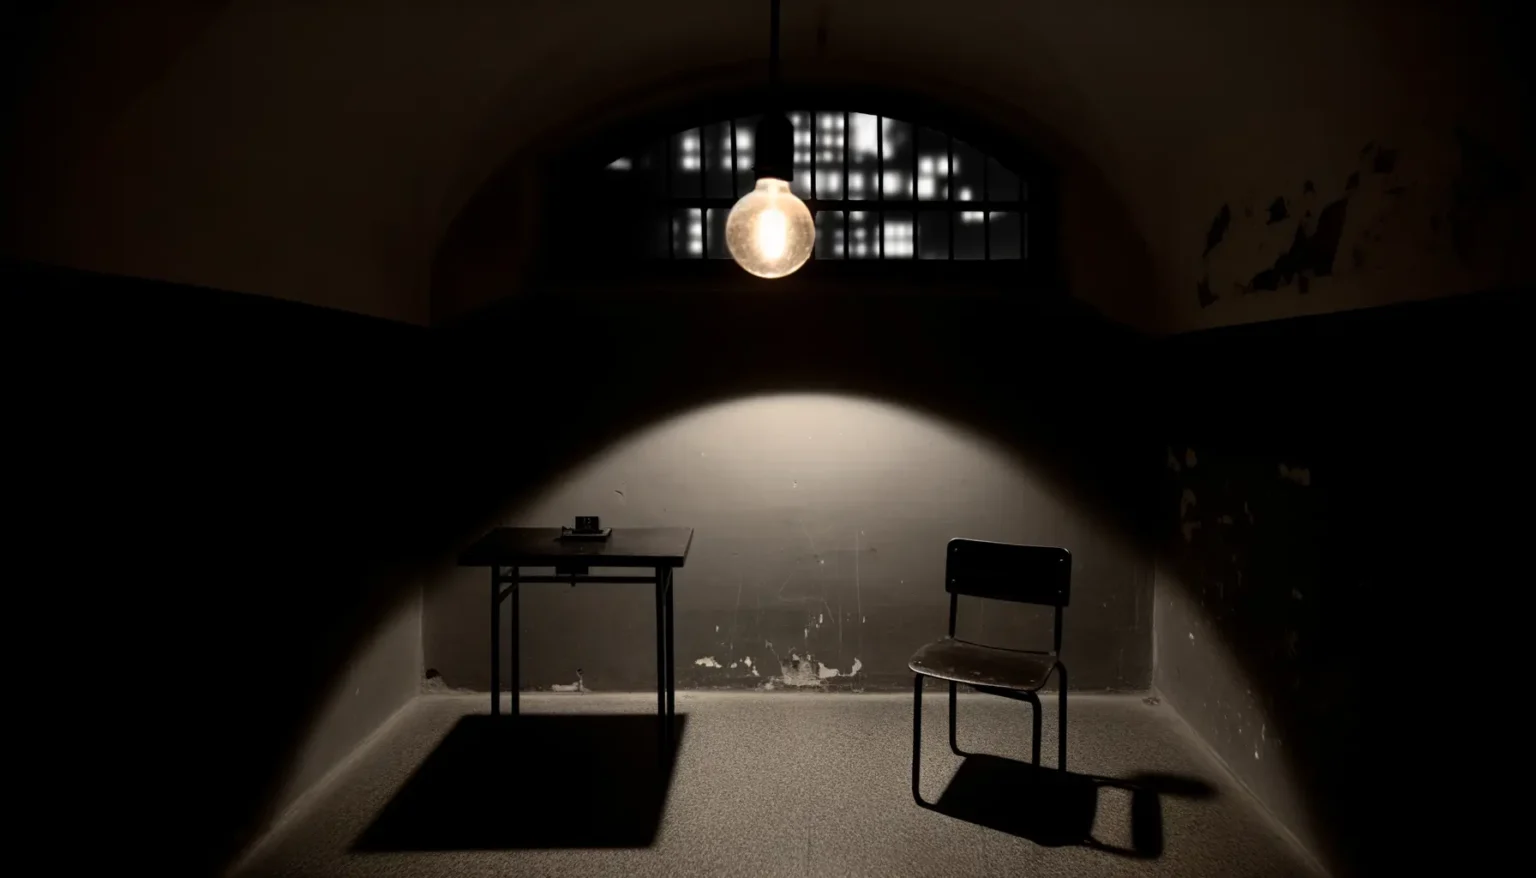 Ein dunkler Raum mit einem Tisch und darauf einer Kamera, daneben ein leerer Stuhl. Das schwache Licht kommt von einer Glühbirne, die direkt über dem Tisch hängt, und verdunkelten Fenstern im Hintergrund. Die Szene wirkt wie ein Verhörraum mit abblätternder Farbe an der Wand.